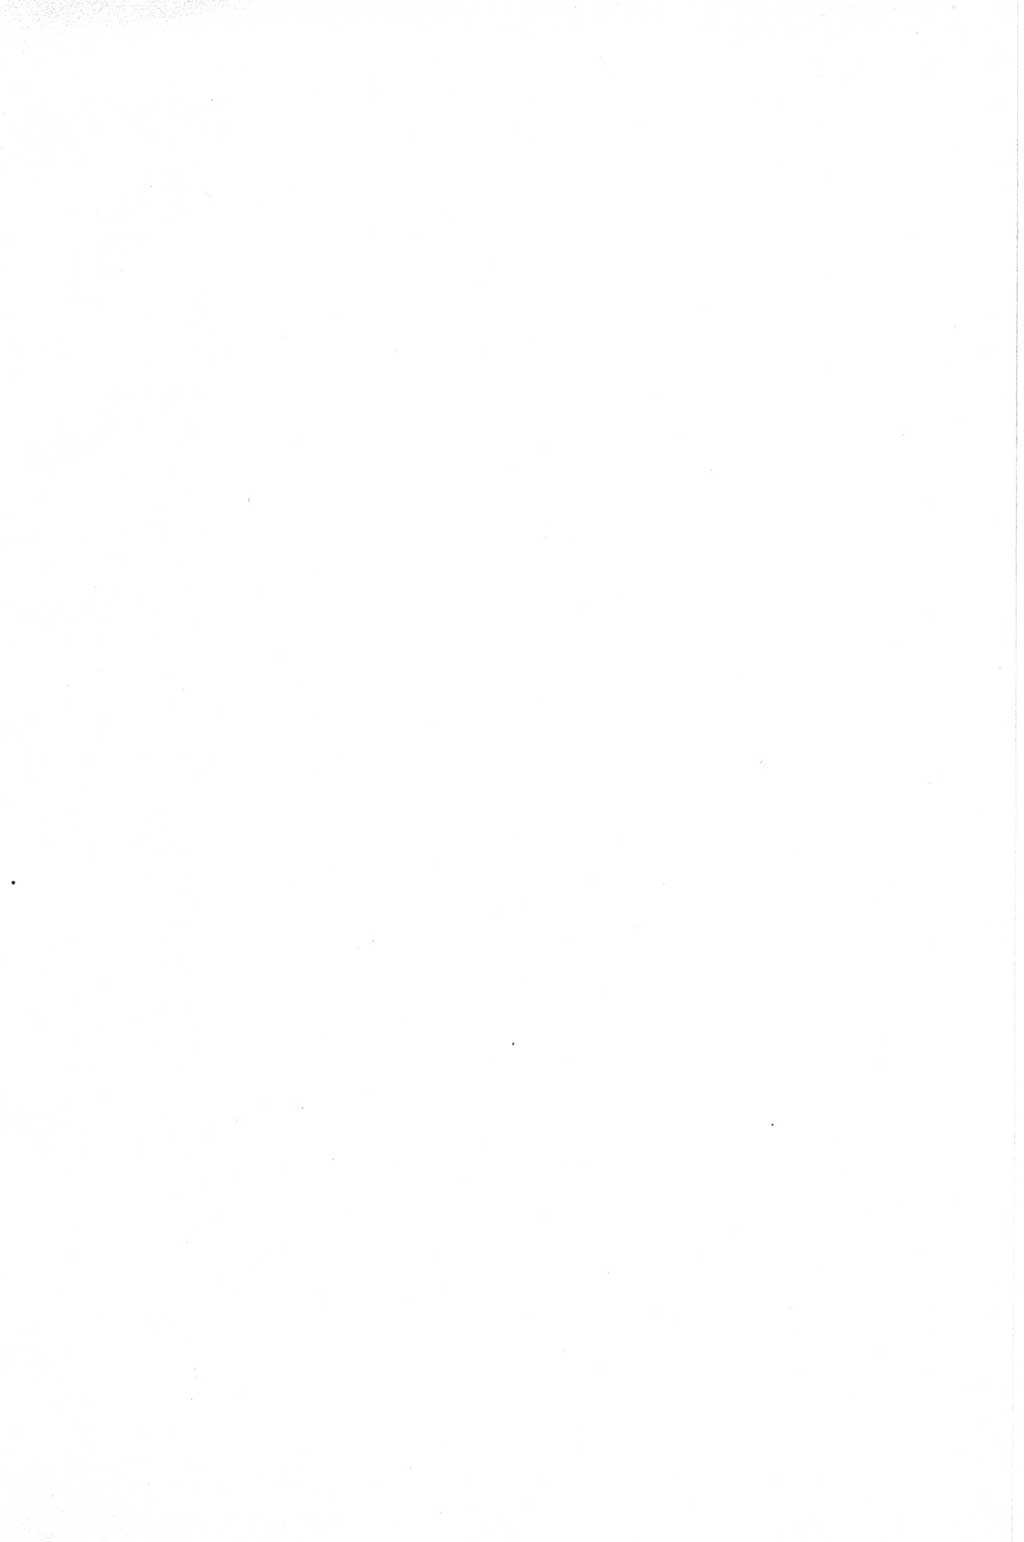 Strafgesetzbuch (StGB) der Deutschen Demokratischen Republik (DDR) und angrenzende Gesetze und Bestimmungen 1968, Seite 379 (StGB Ges. Best. DDR 1968, S. 379)